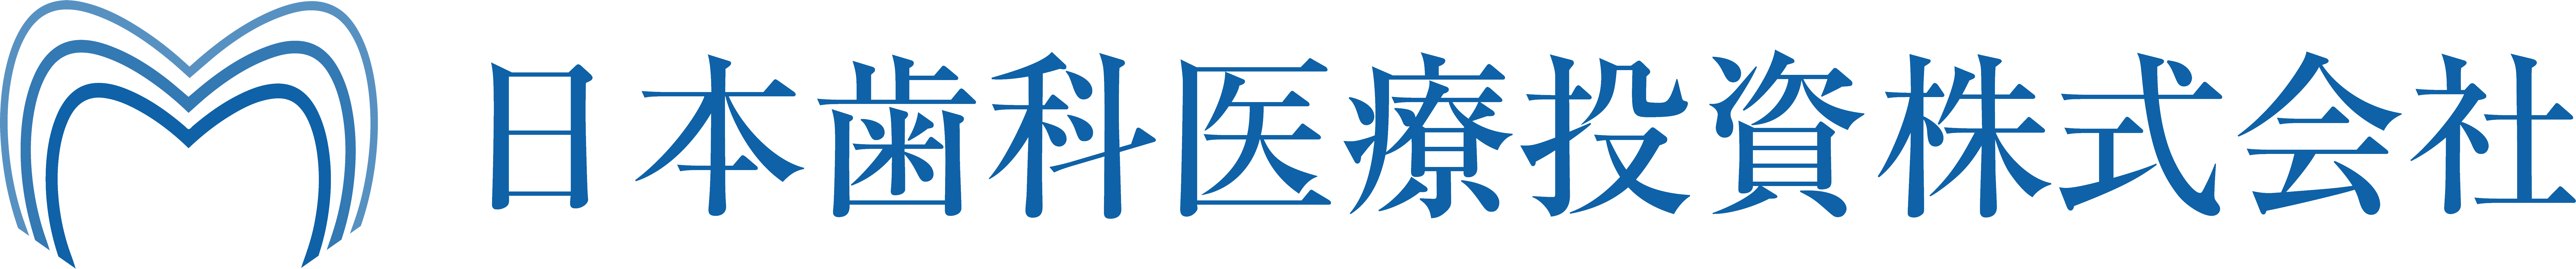 日本歯科医療投資株式会社